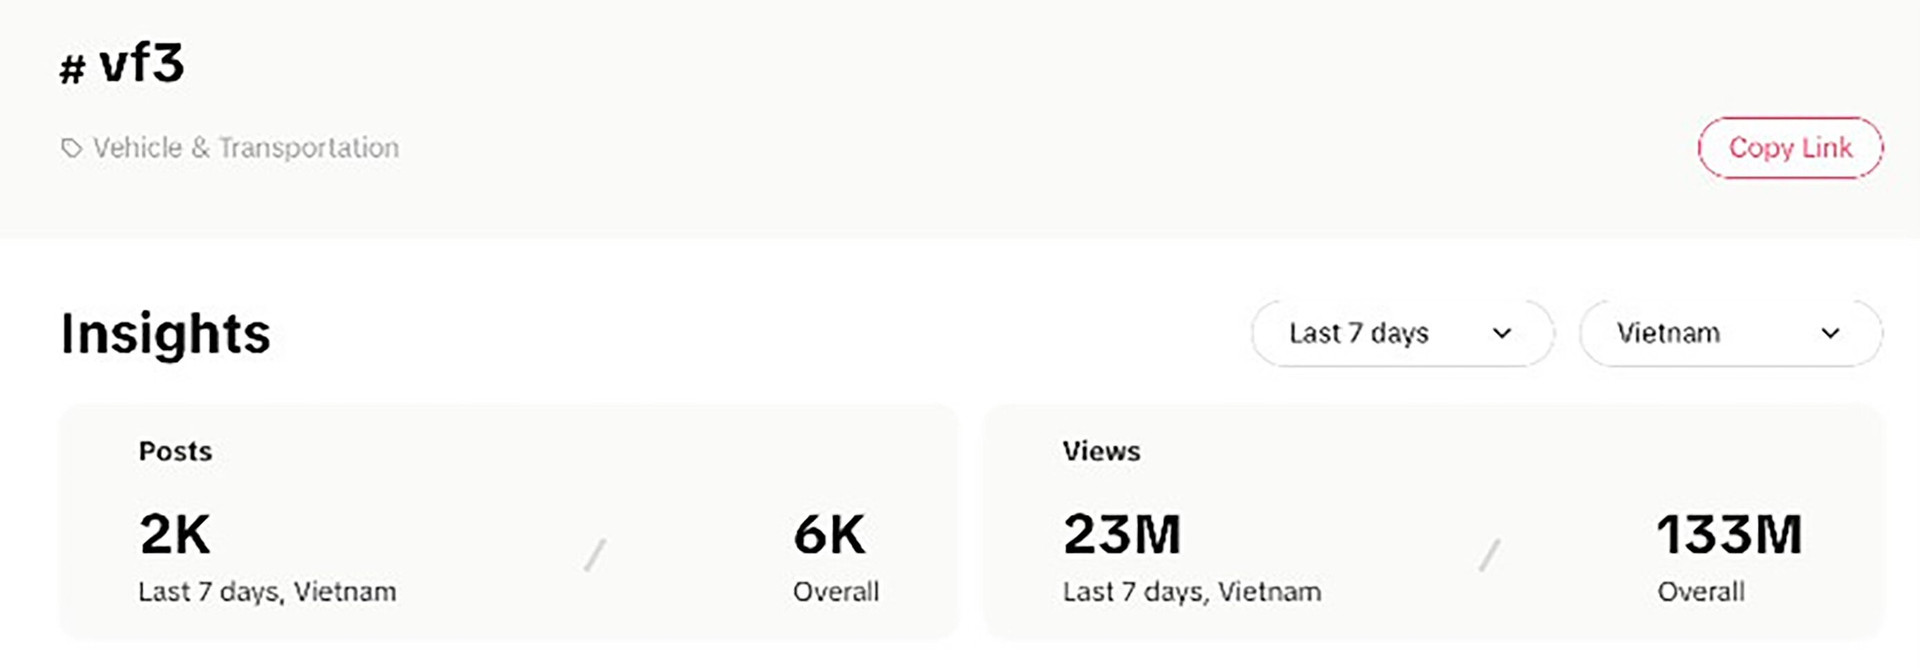 Dữ liệu từ TikTok cho thấy, từ khóa VF 3 đạt 2.000 bài đăng và 23 triệu lượt xem chỉ trong vòng 7 ngày.